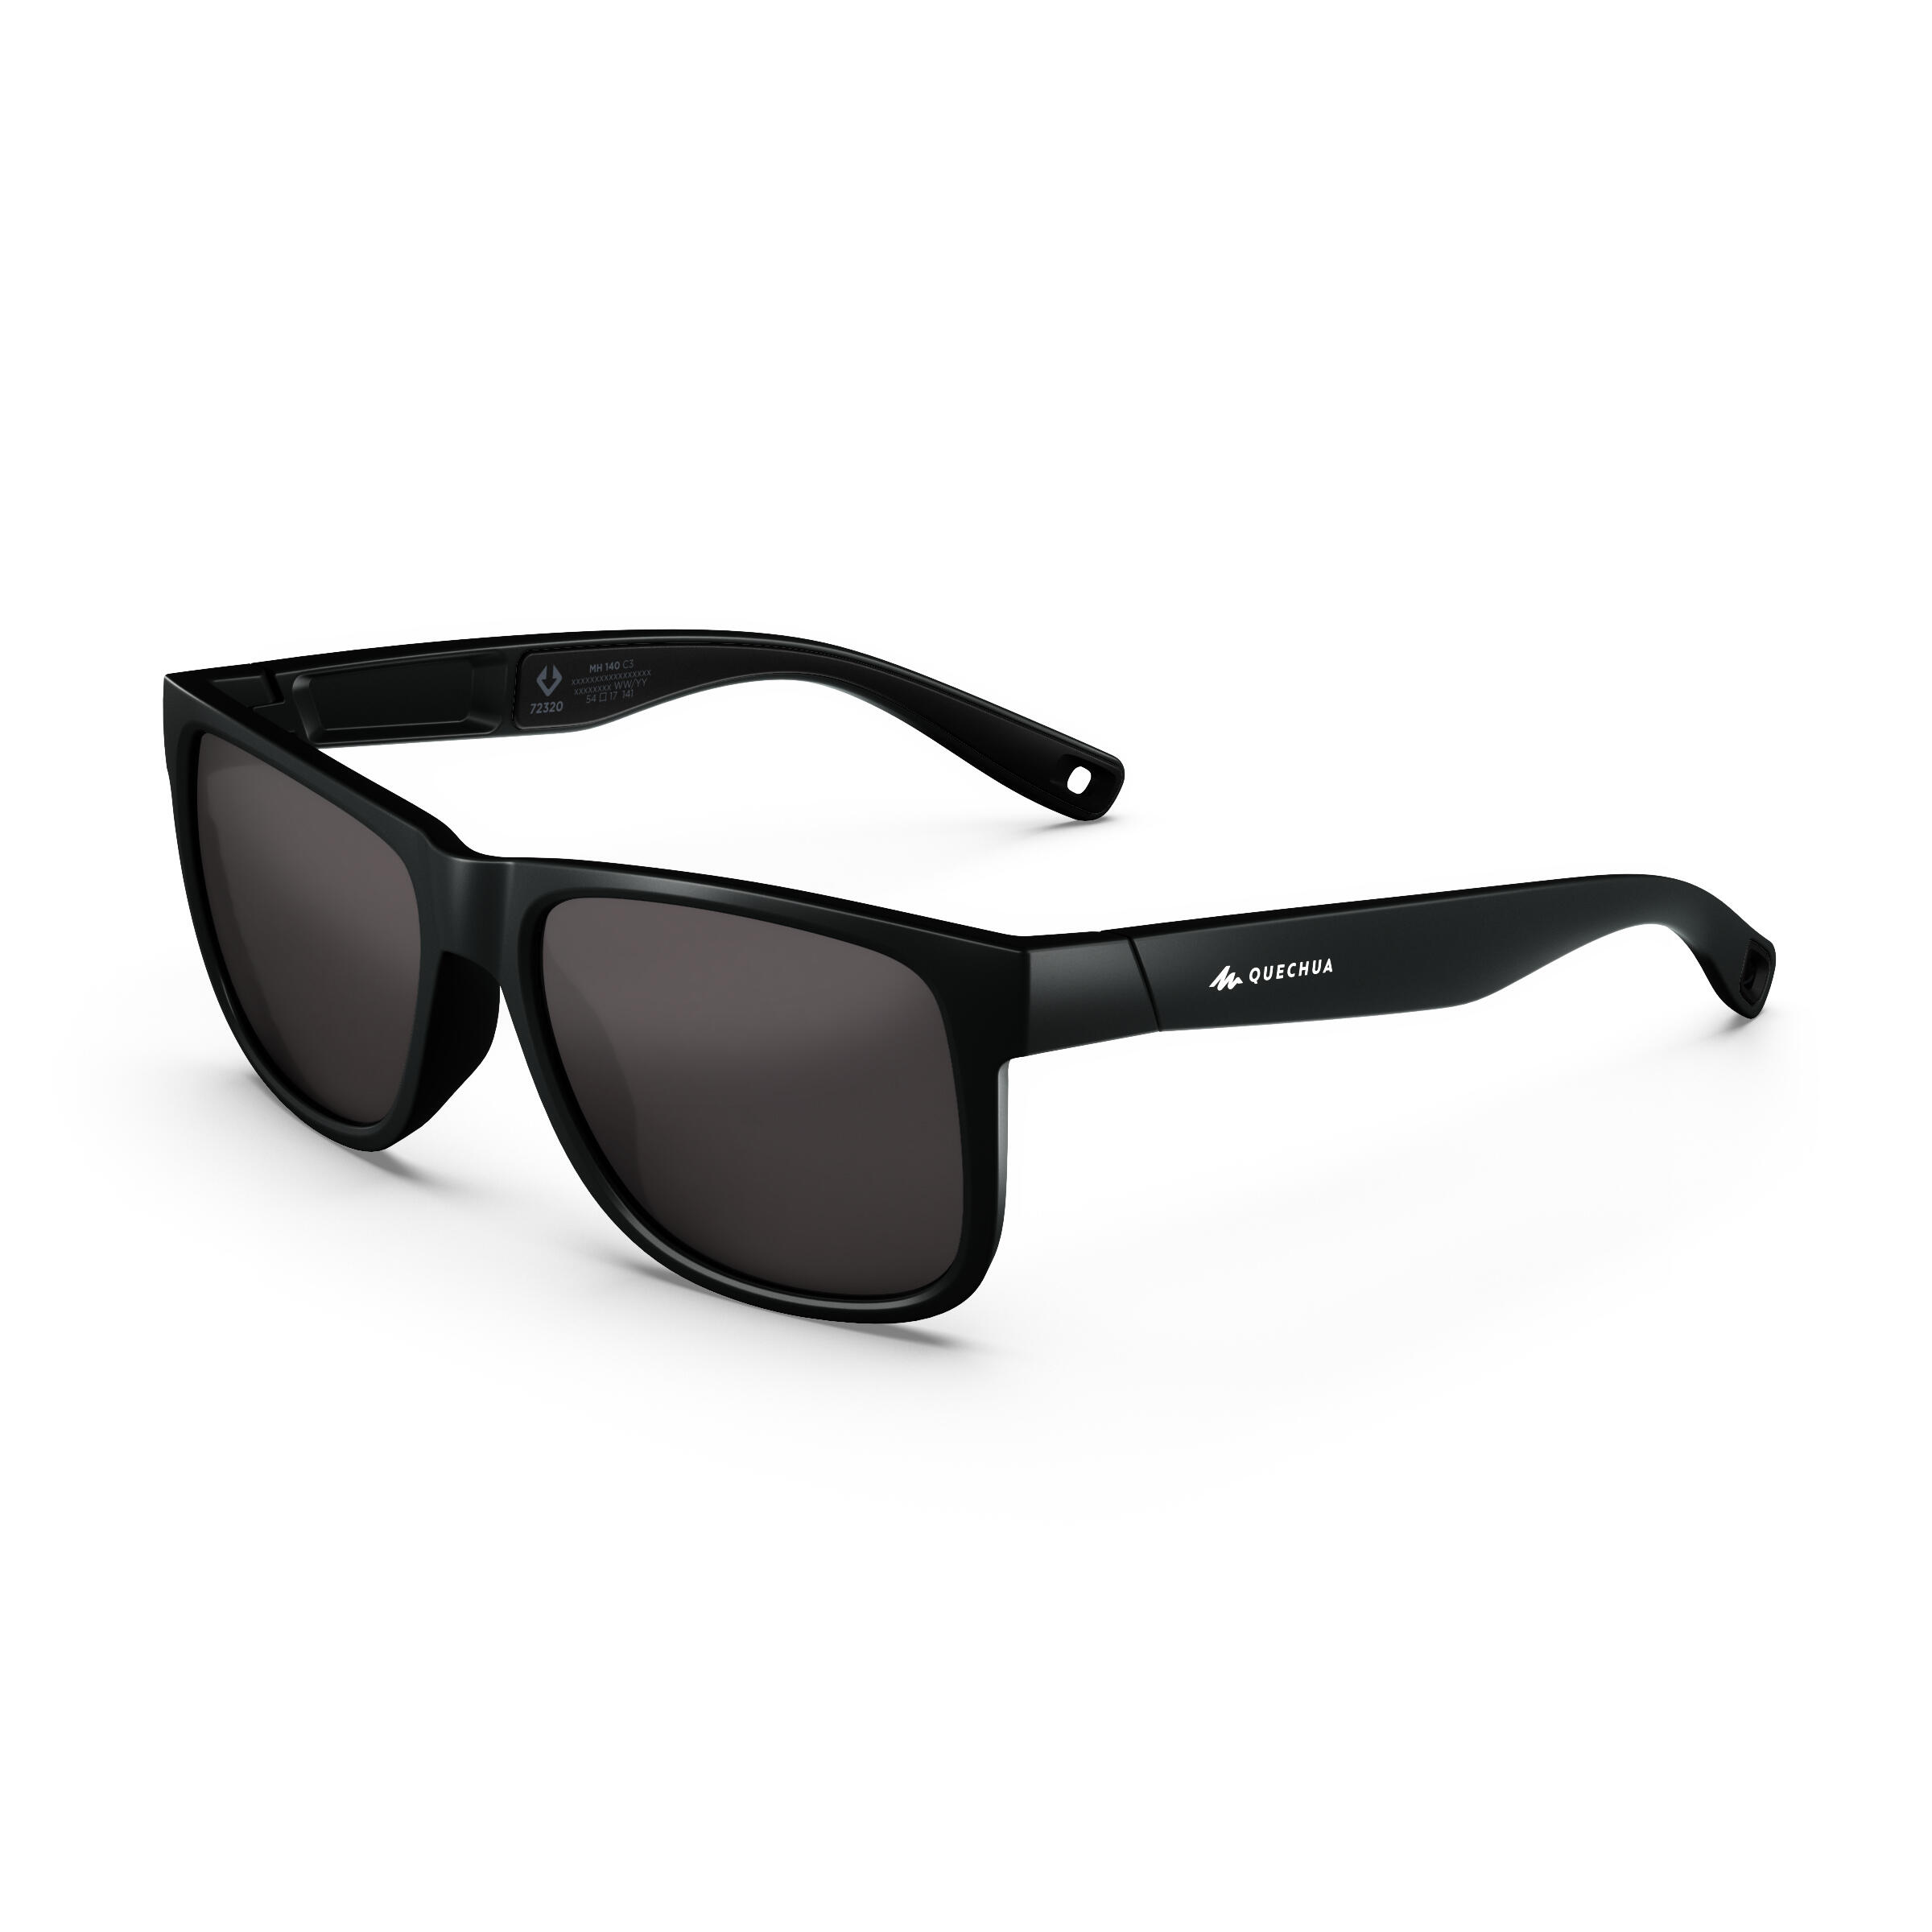 Sunglasses for Men & Women Buy Online - Decathlon